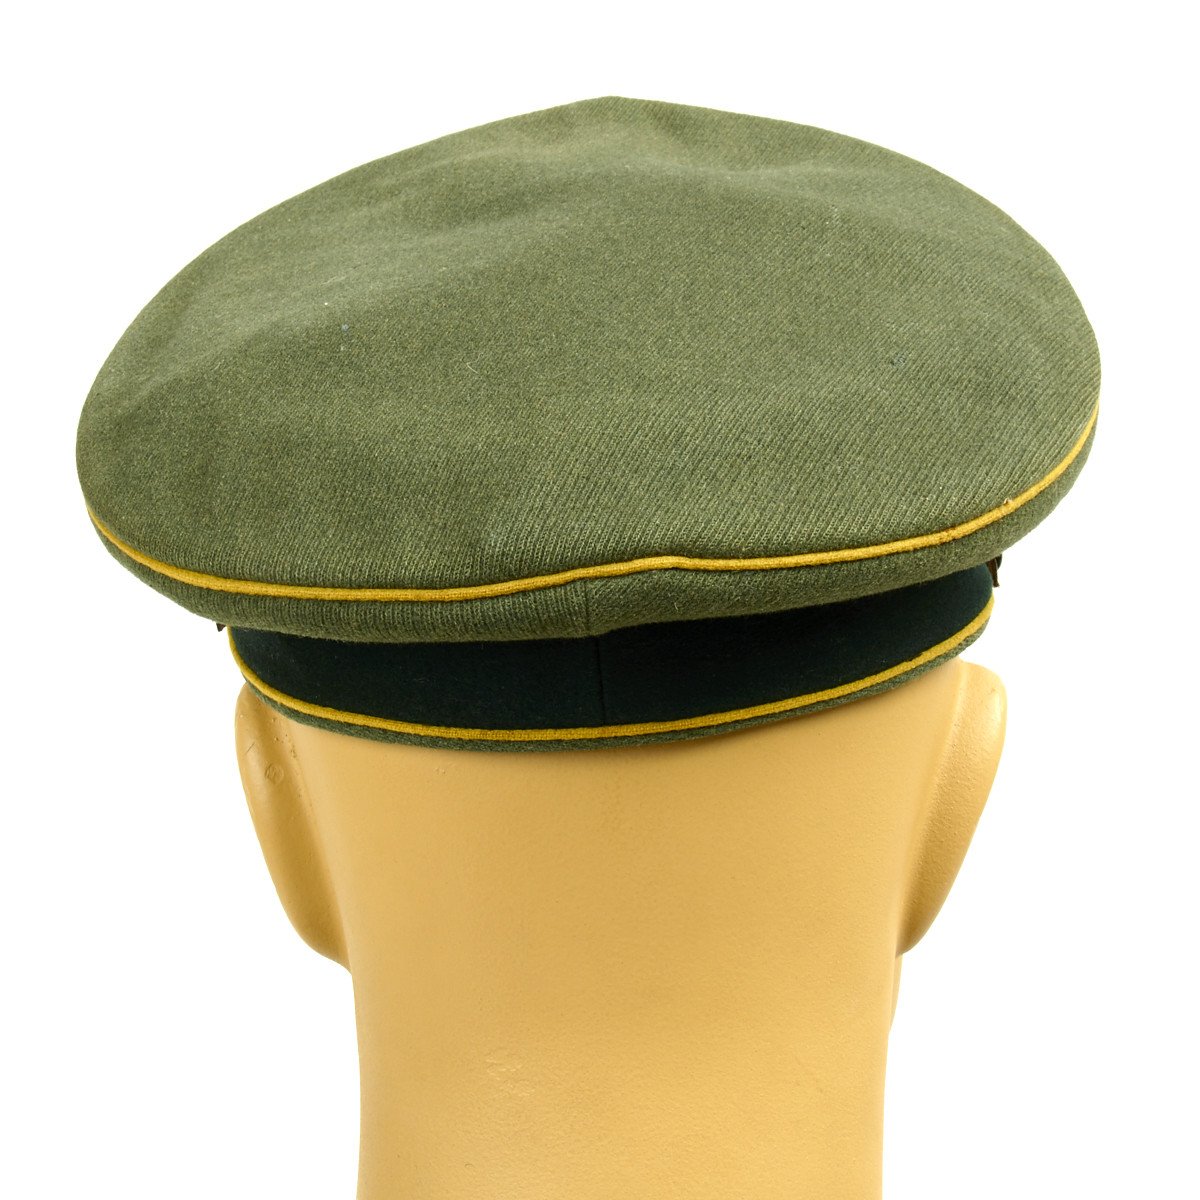 Original German WWII Army Heer Signal Corps NCO/EM Visor Cap ...